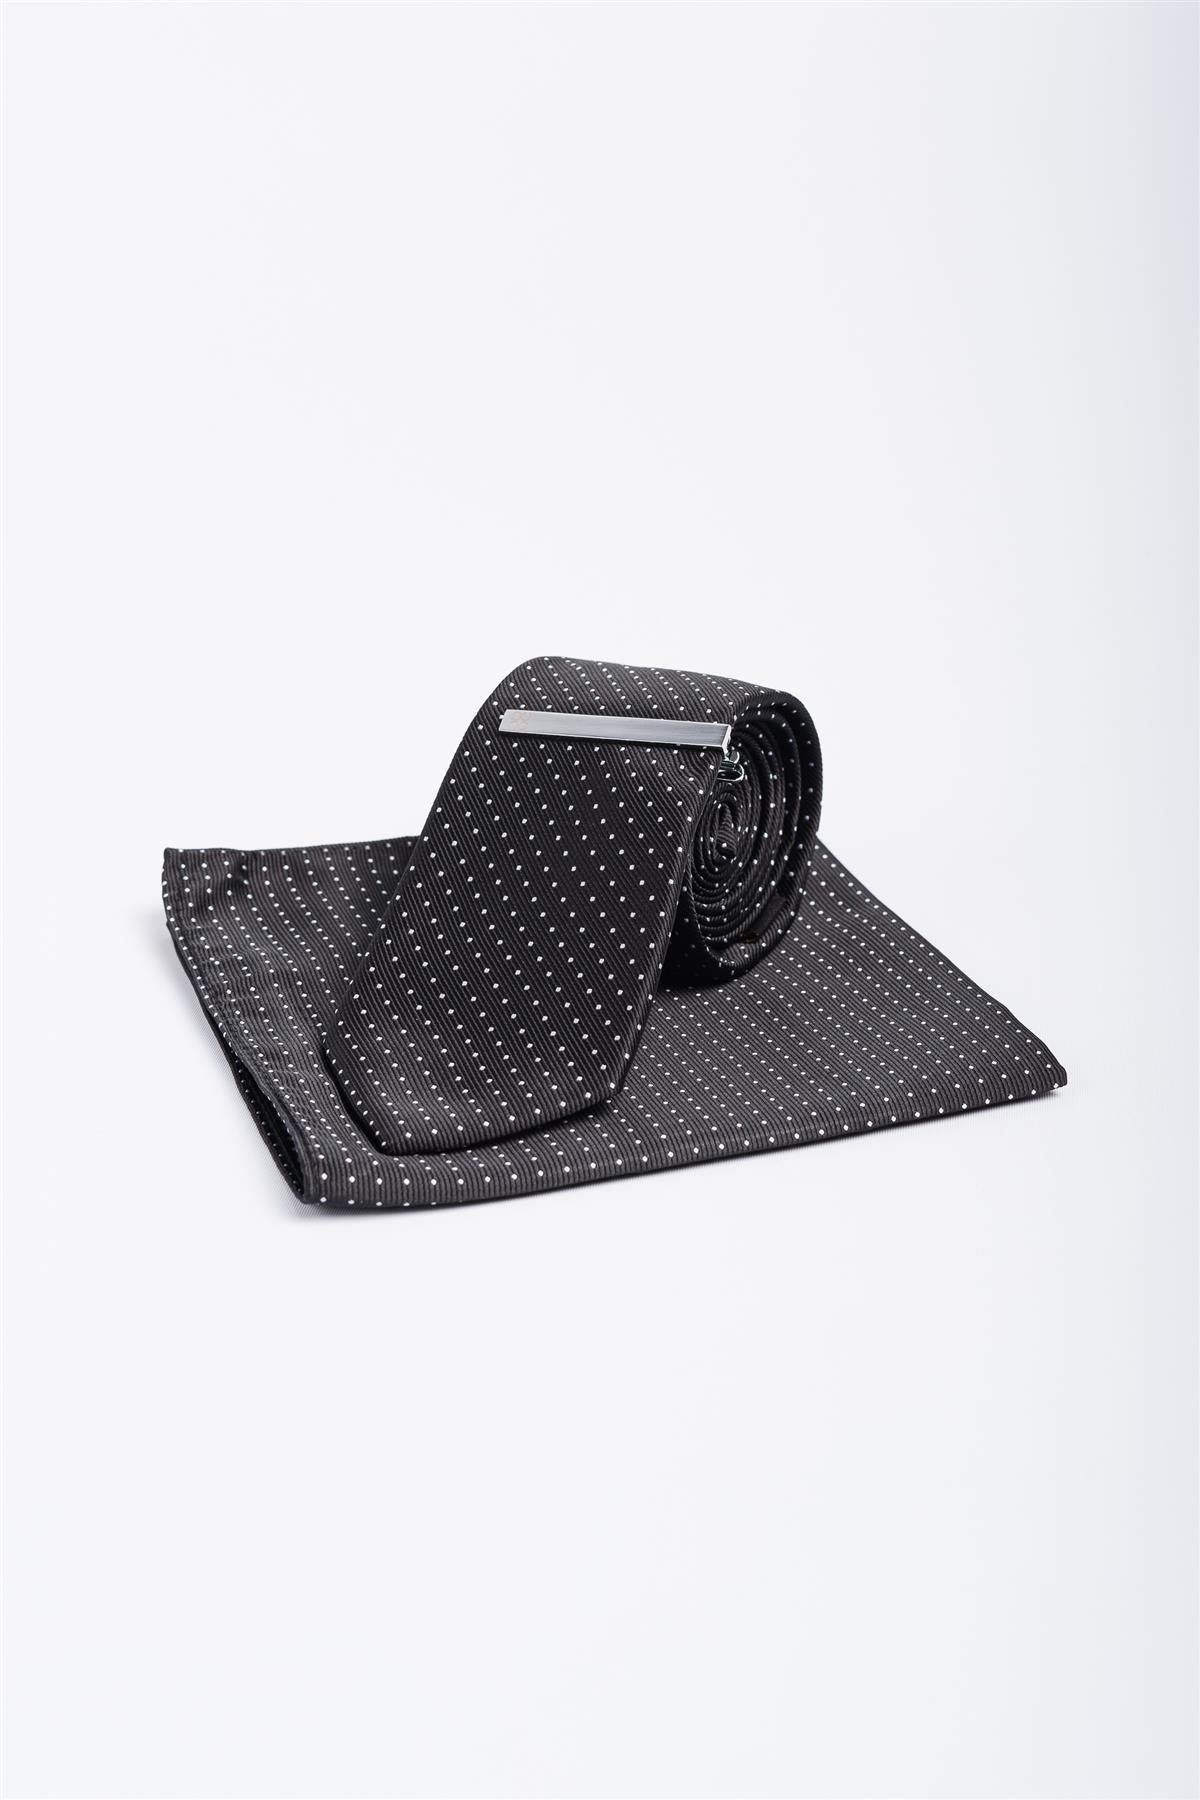 Cavani black dot tie set